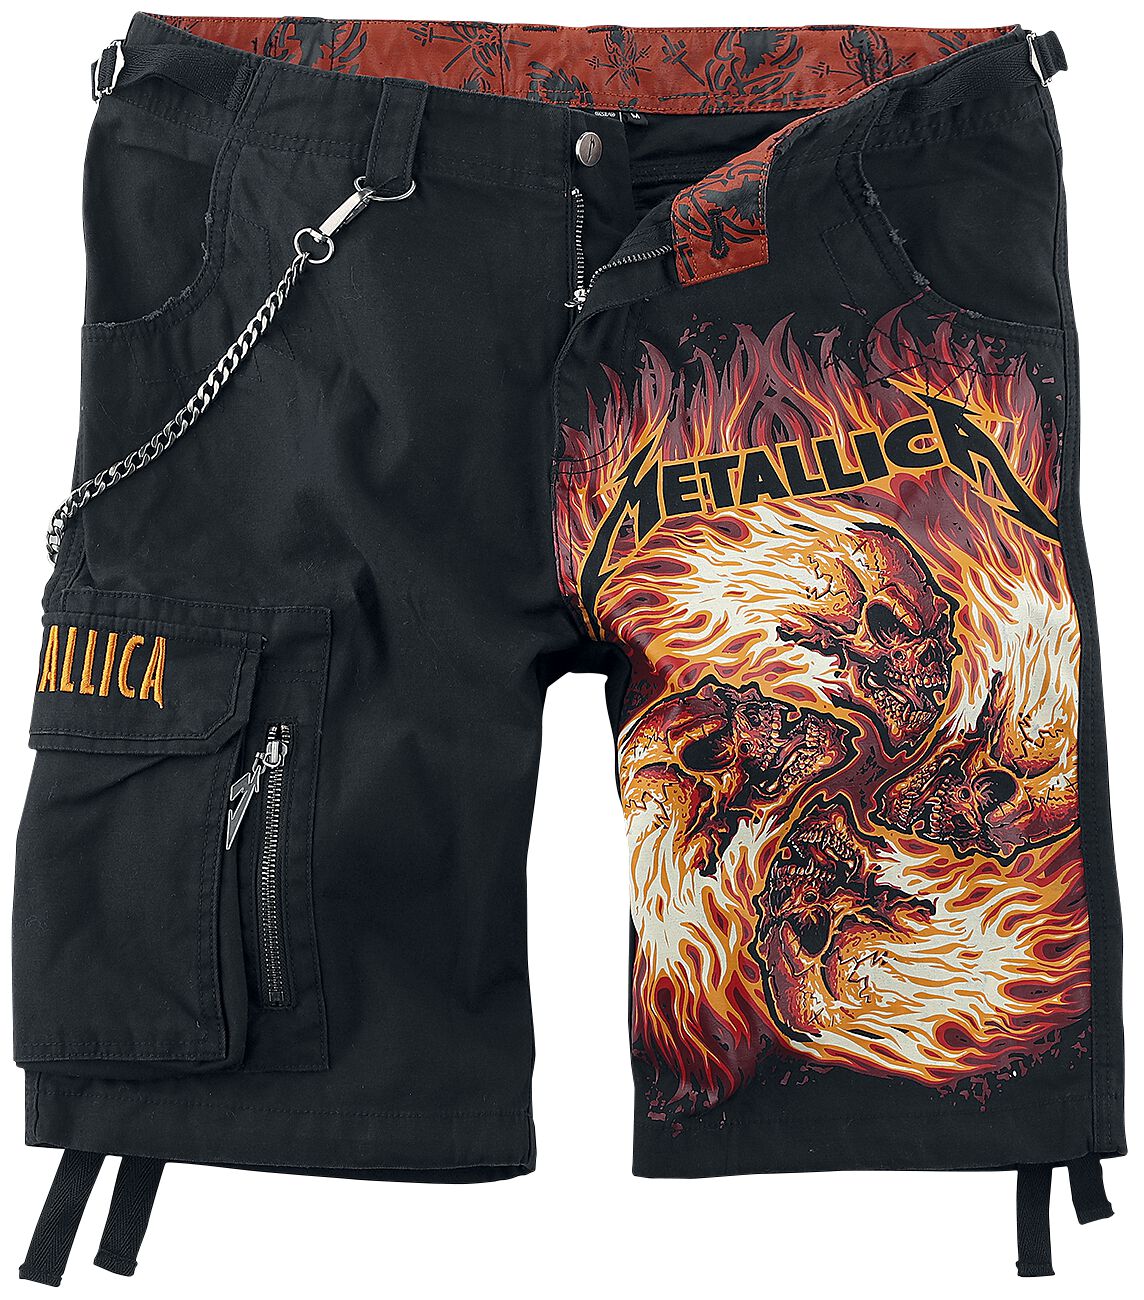 Metallica Short - EMP Signature Collection - M bis 4XL - für Männer - Größe M - schwarz  - EMP exklusives Merchandise!